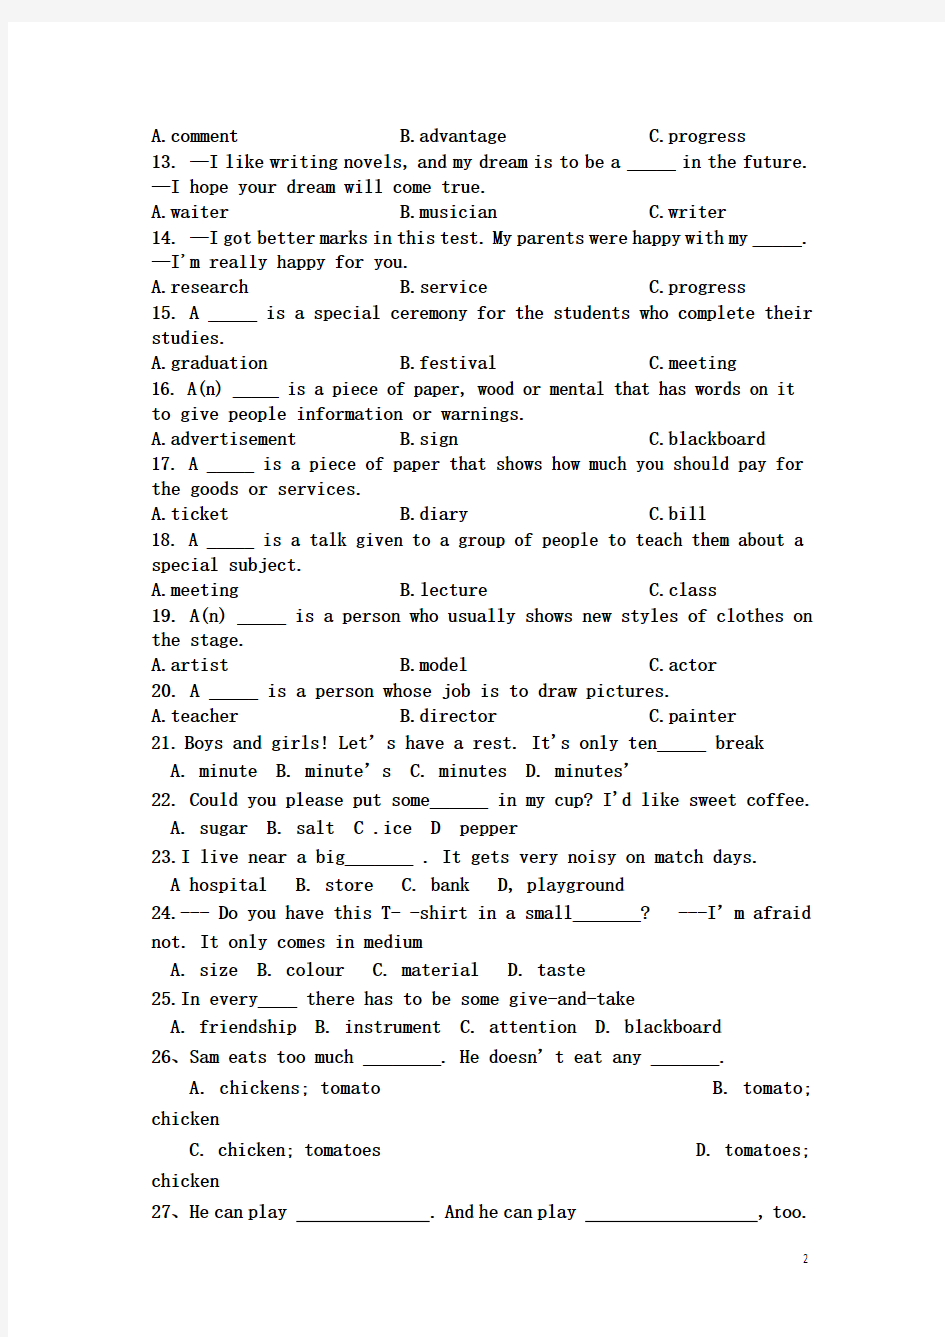 初中英语语法系列第二讲名词精练(100)+填空,单复数变化,所有格